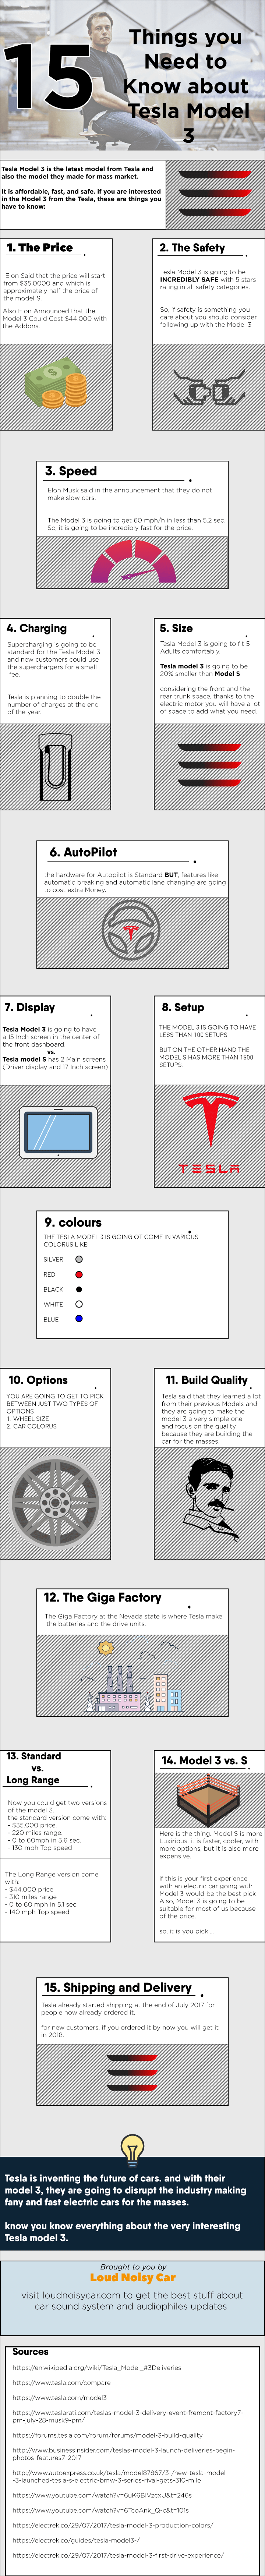 特斯拉Model 3信息图